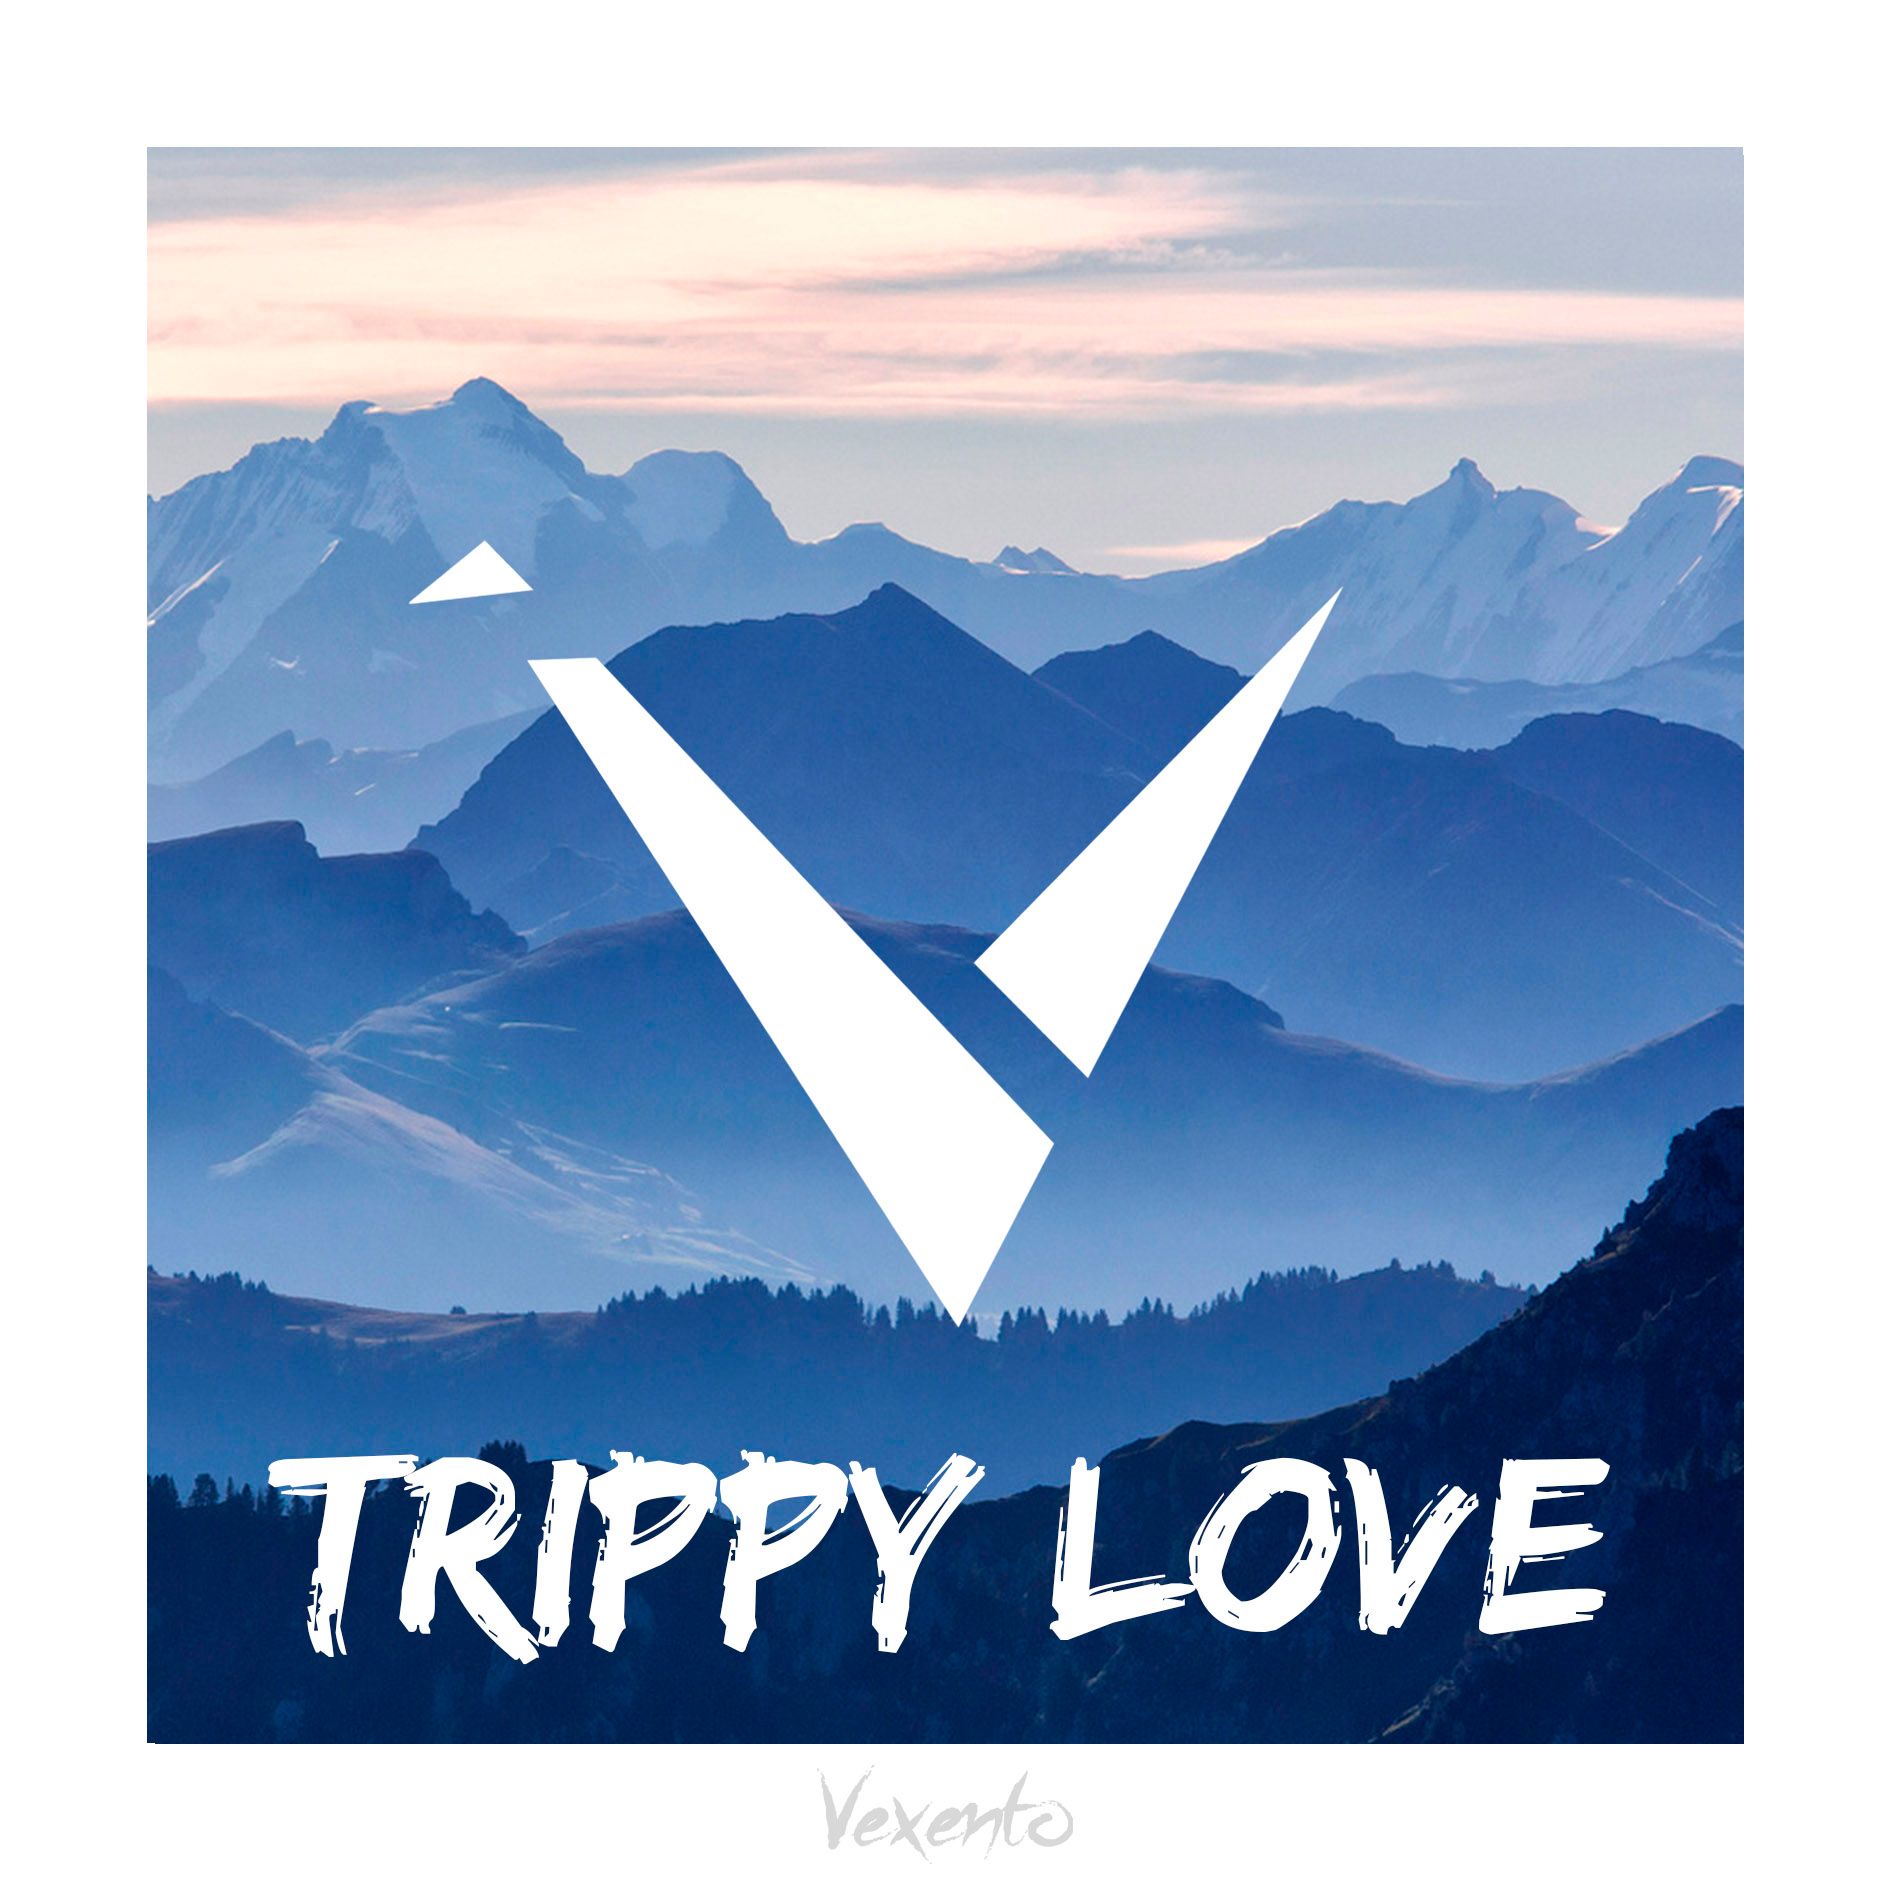 تحميل Vexento - Trippy Love